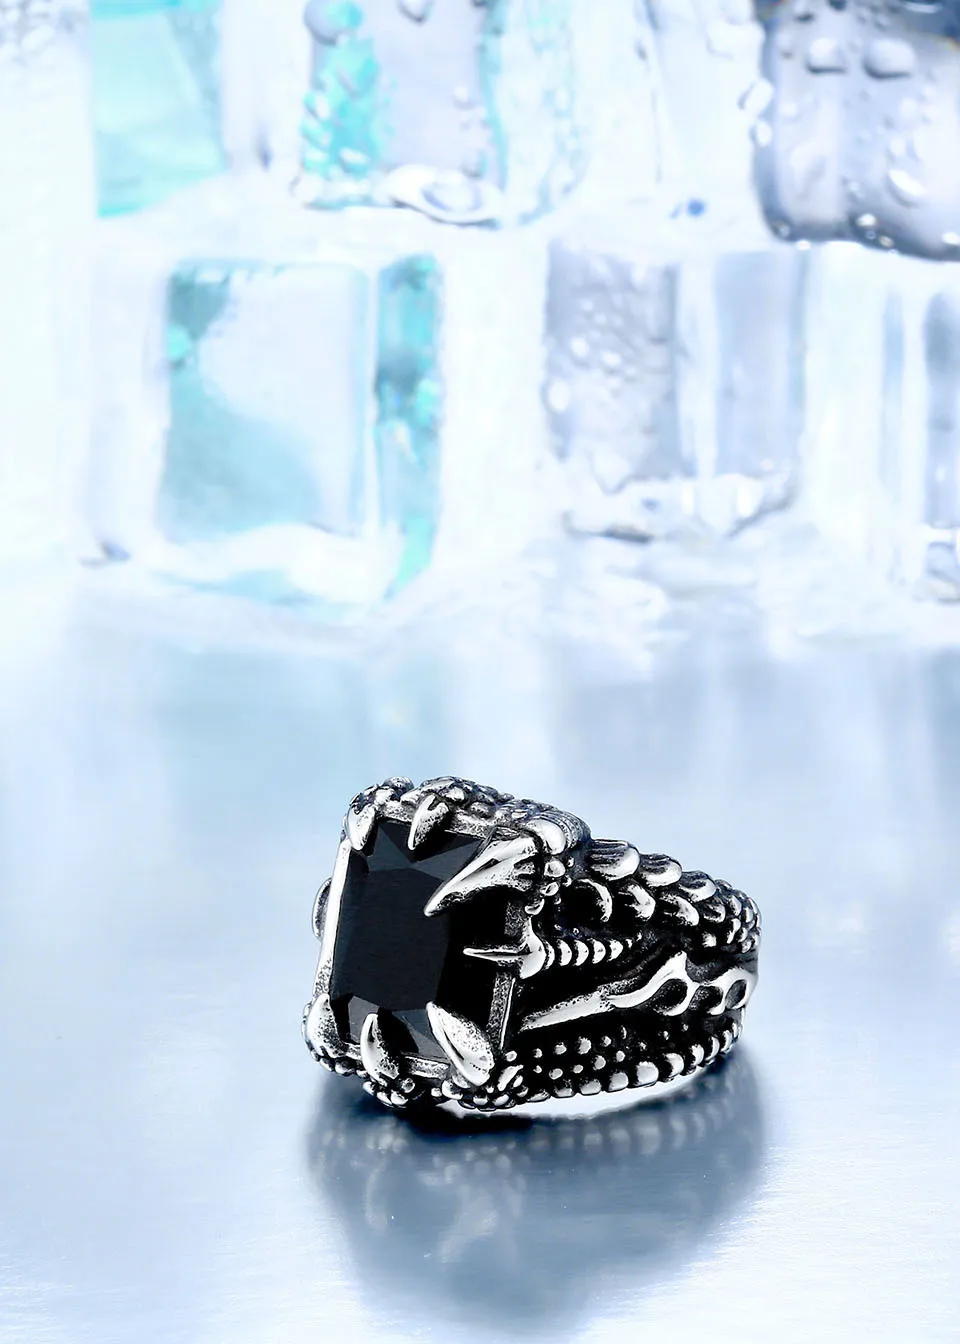 Крутое кольцо-коготь дракона с красным/синим/черным камнем из нержавеющей стали CZ Кольцо мужское Hiqh качество ювелирные изделия цена BR8-178